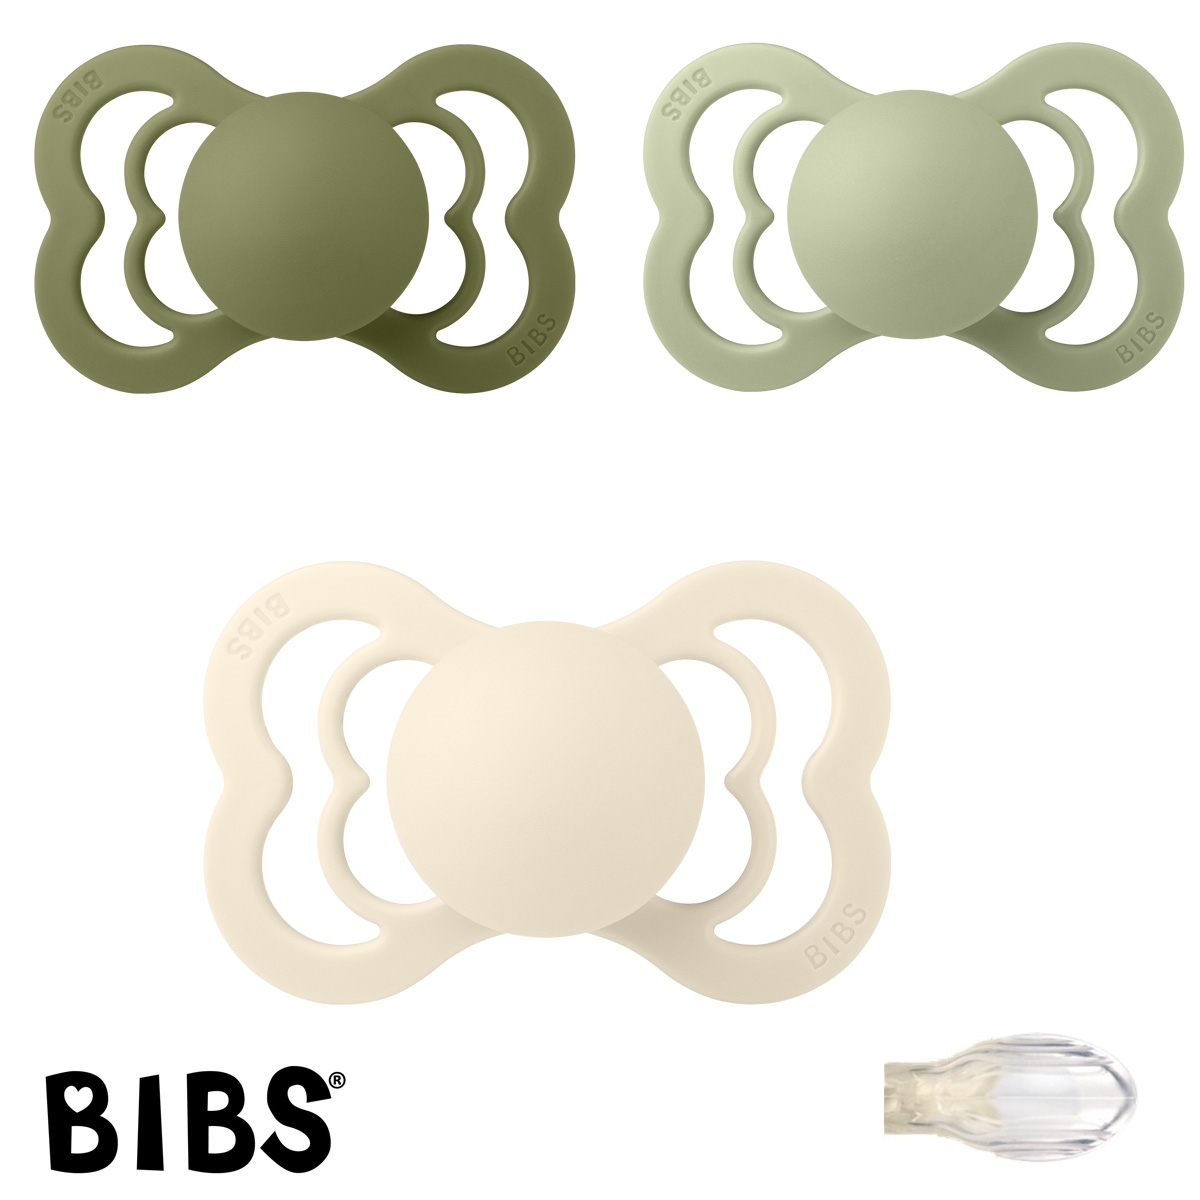 BIBS Supreme Sutter med navn, 1 Olive, 1 Sage, 1 Ivory, Symmetrisk Silikone str.2 Pakke med 3 sutter